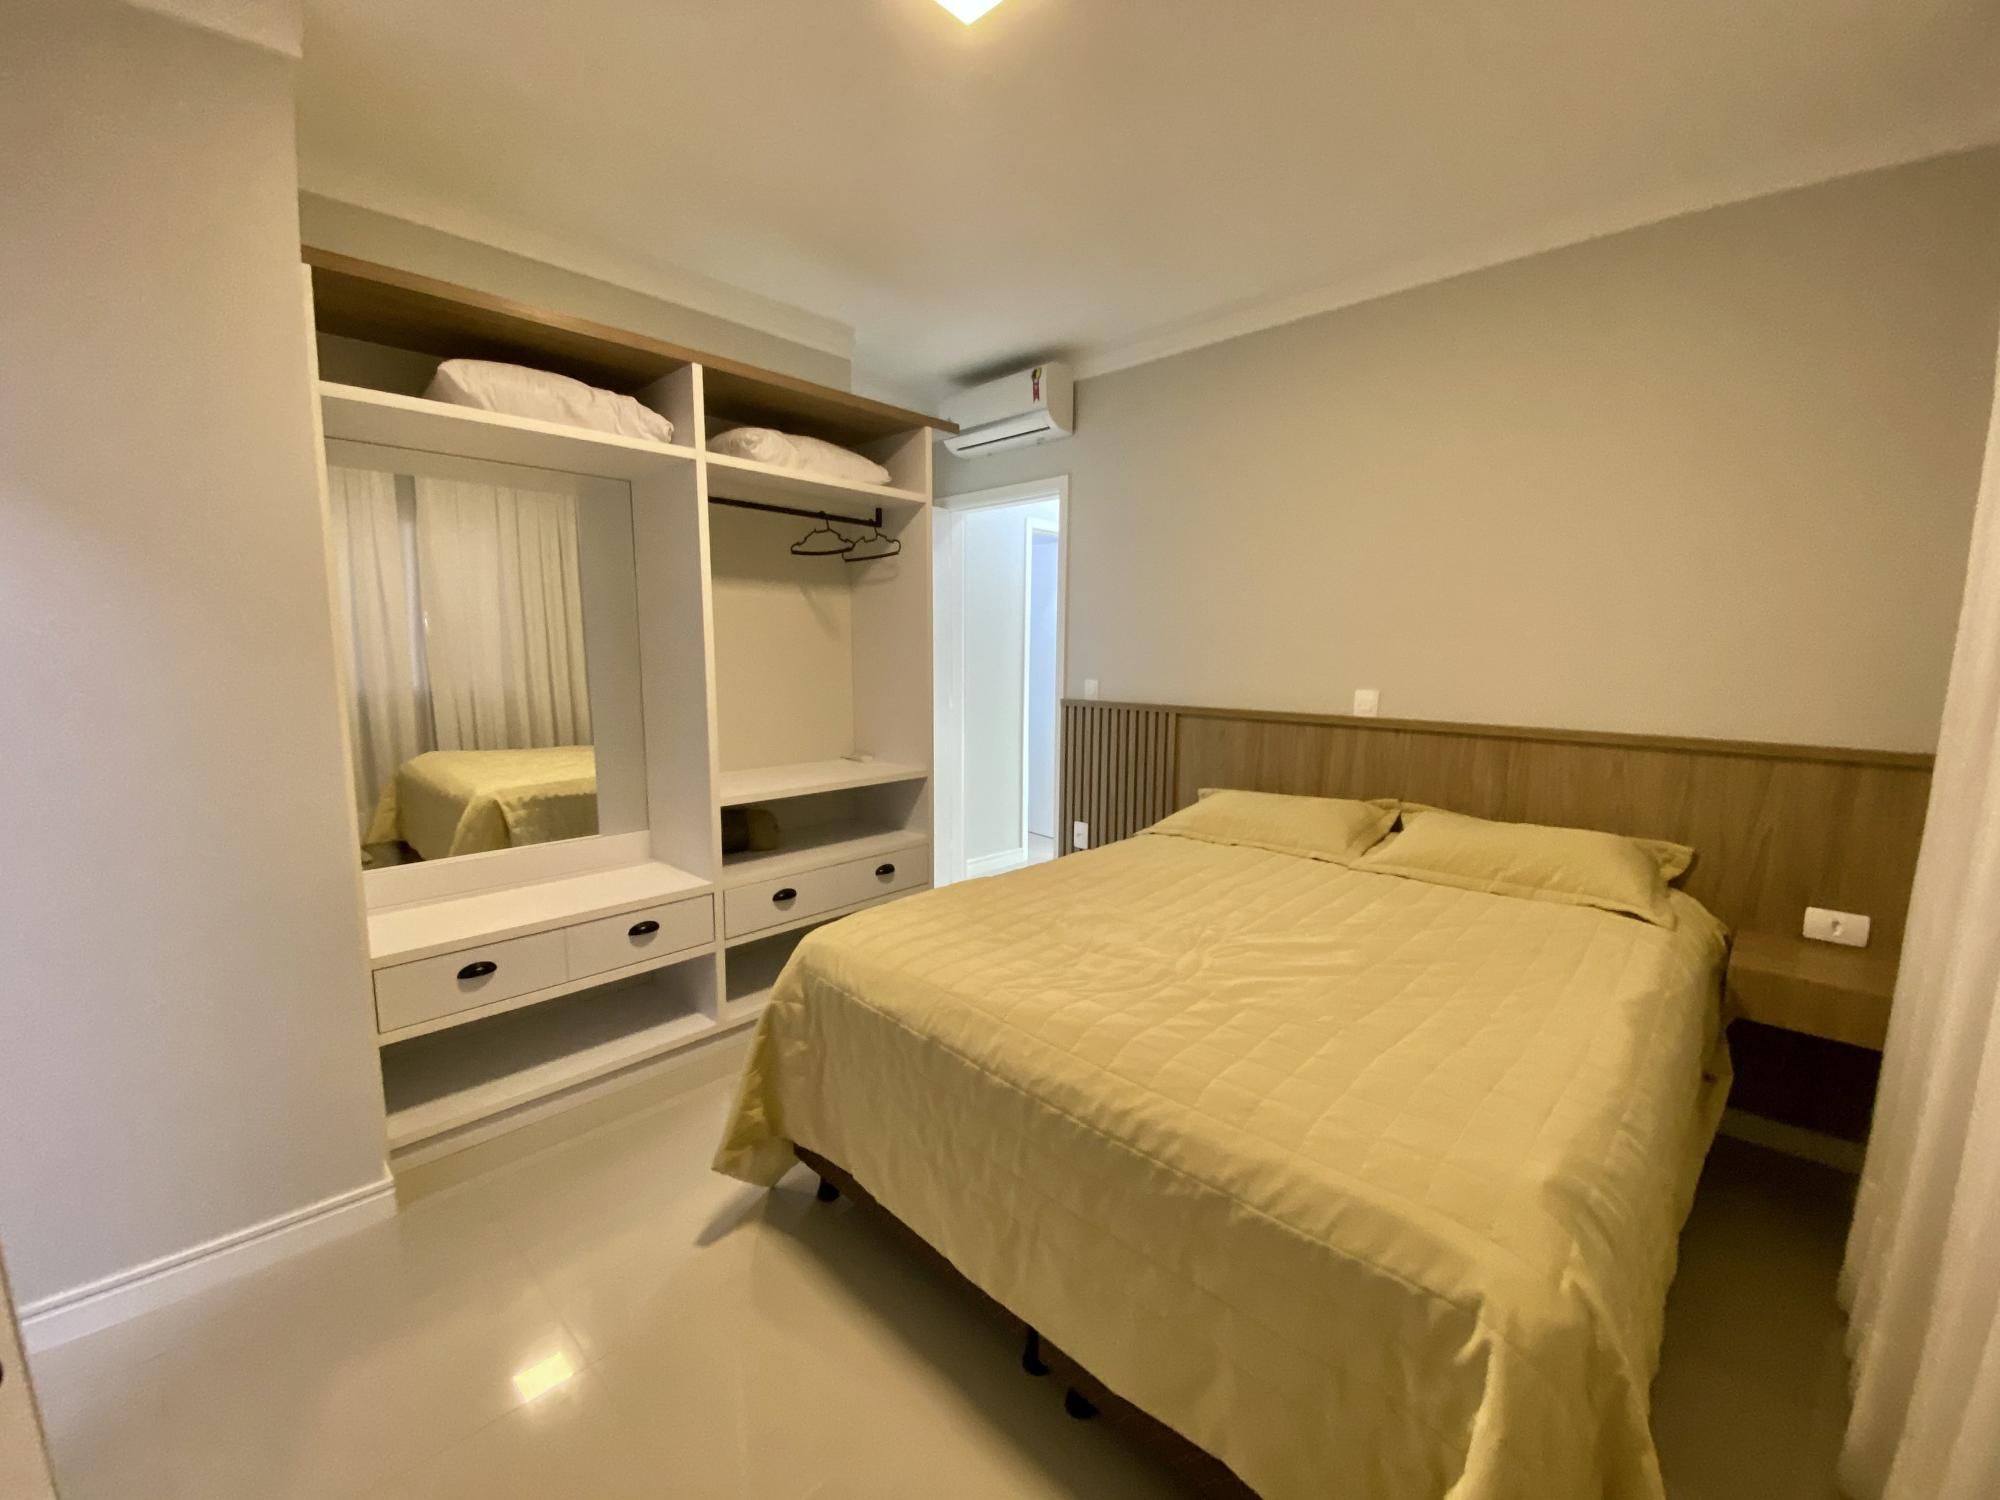 Apartamento com 2 Dormitórios para alugar, 74 m² valor à combinar